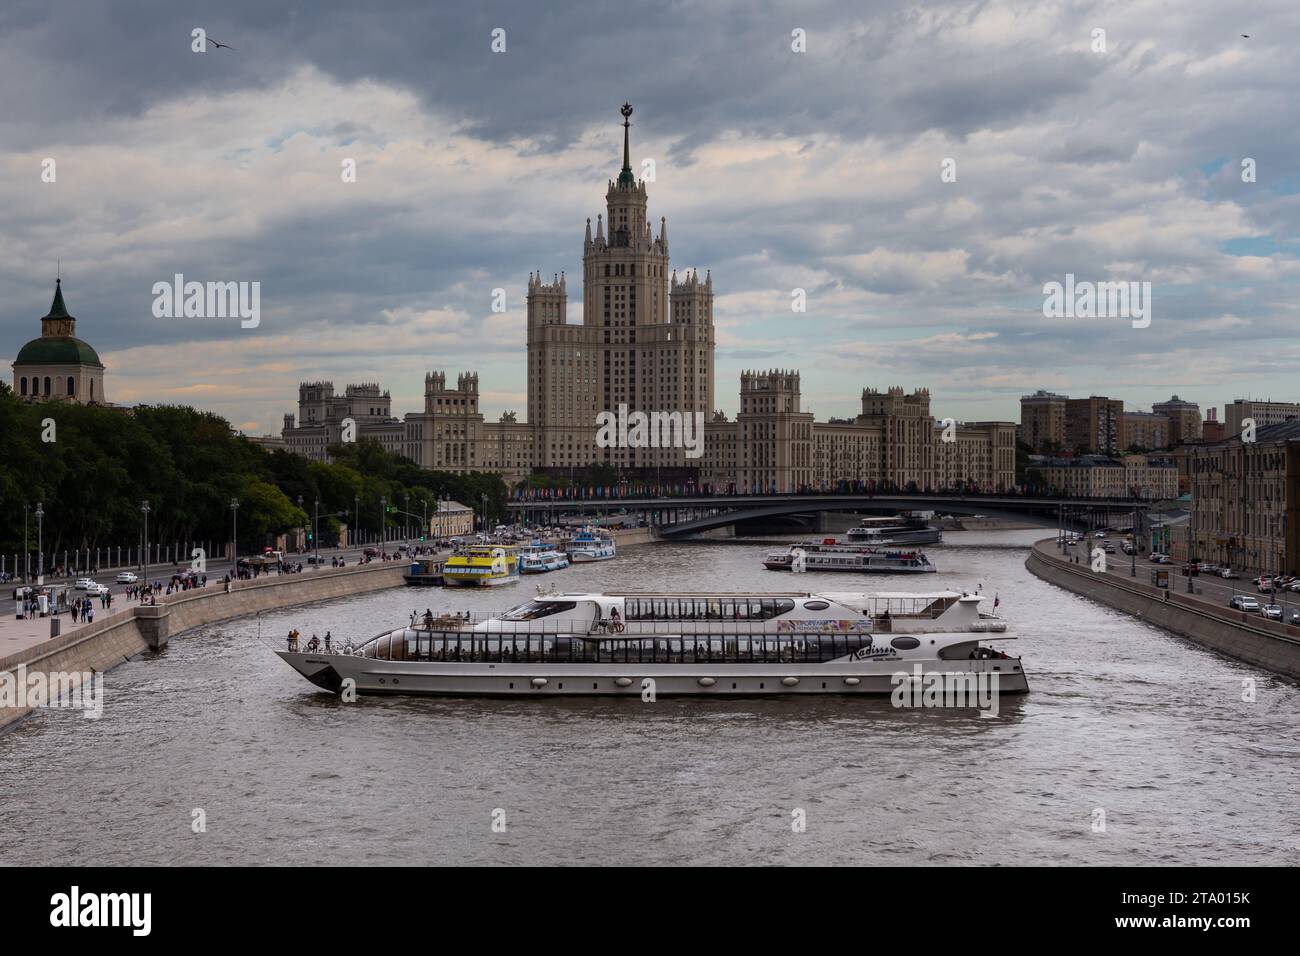 Moskau, Russland - 11. juni 2018 - U-Wende eines Touristenschiffs auf dem Moskwa-Fluss in der Nähe des Moskworetskaja-Damms Stockfoto